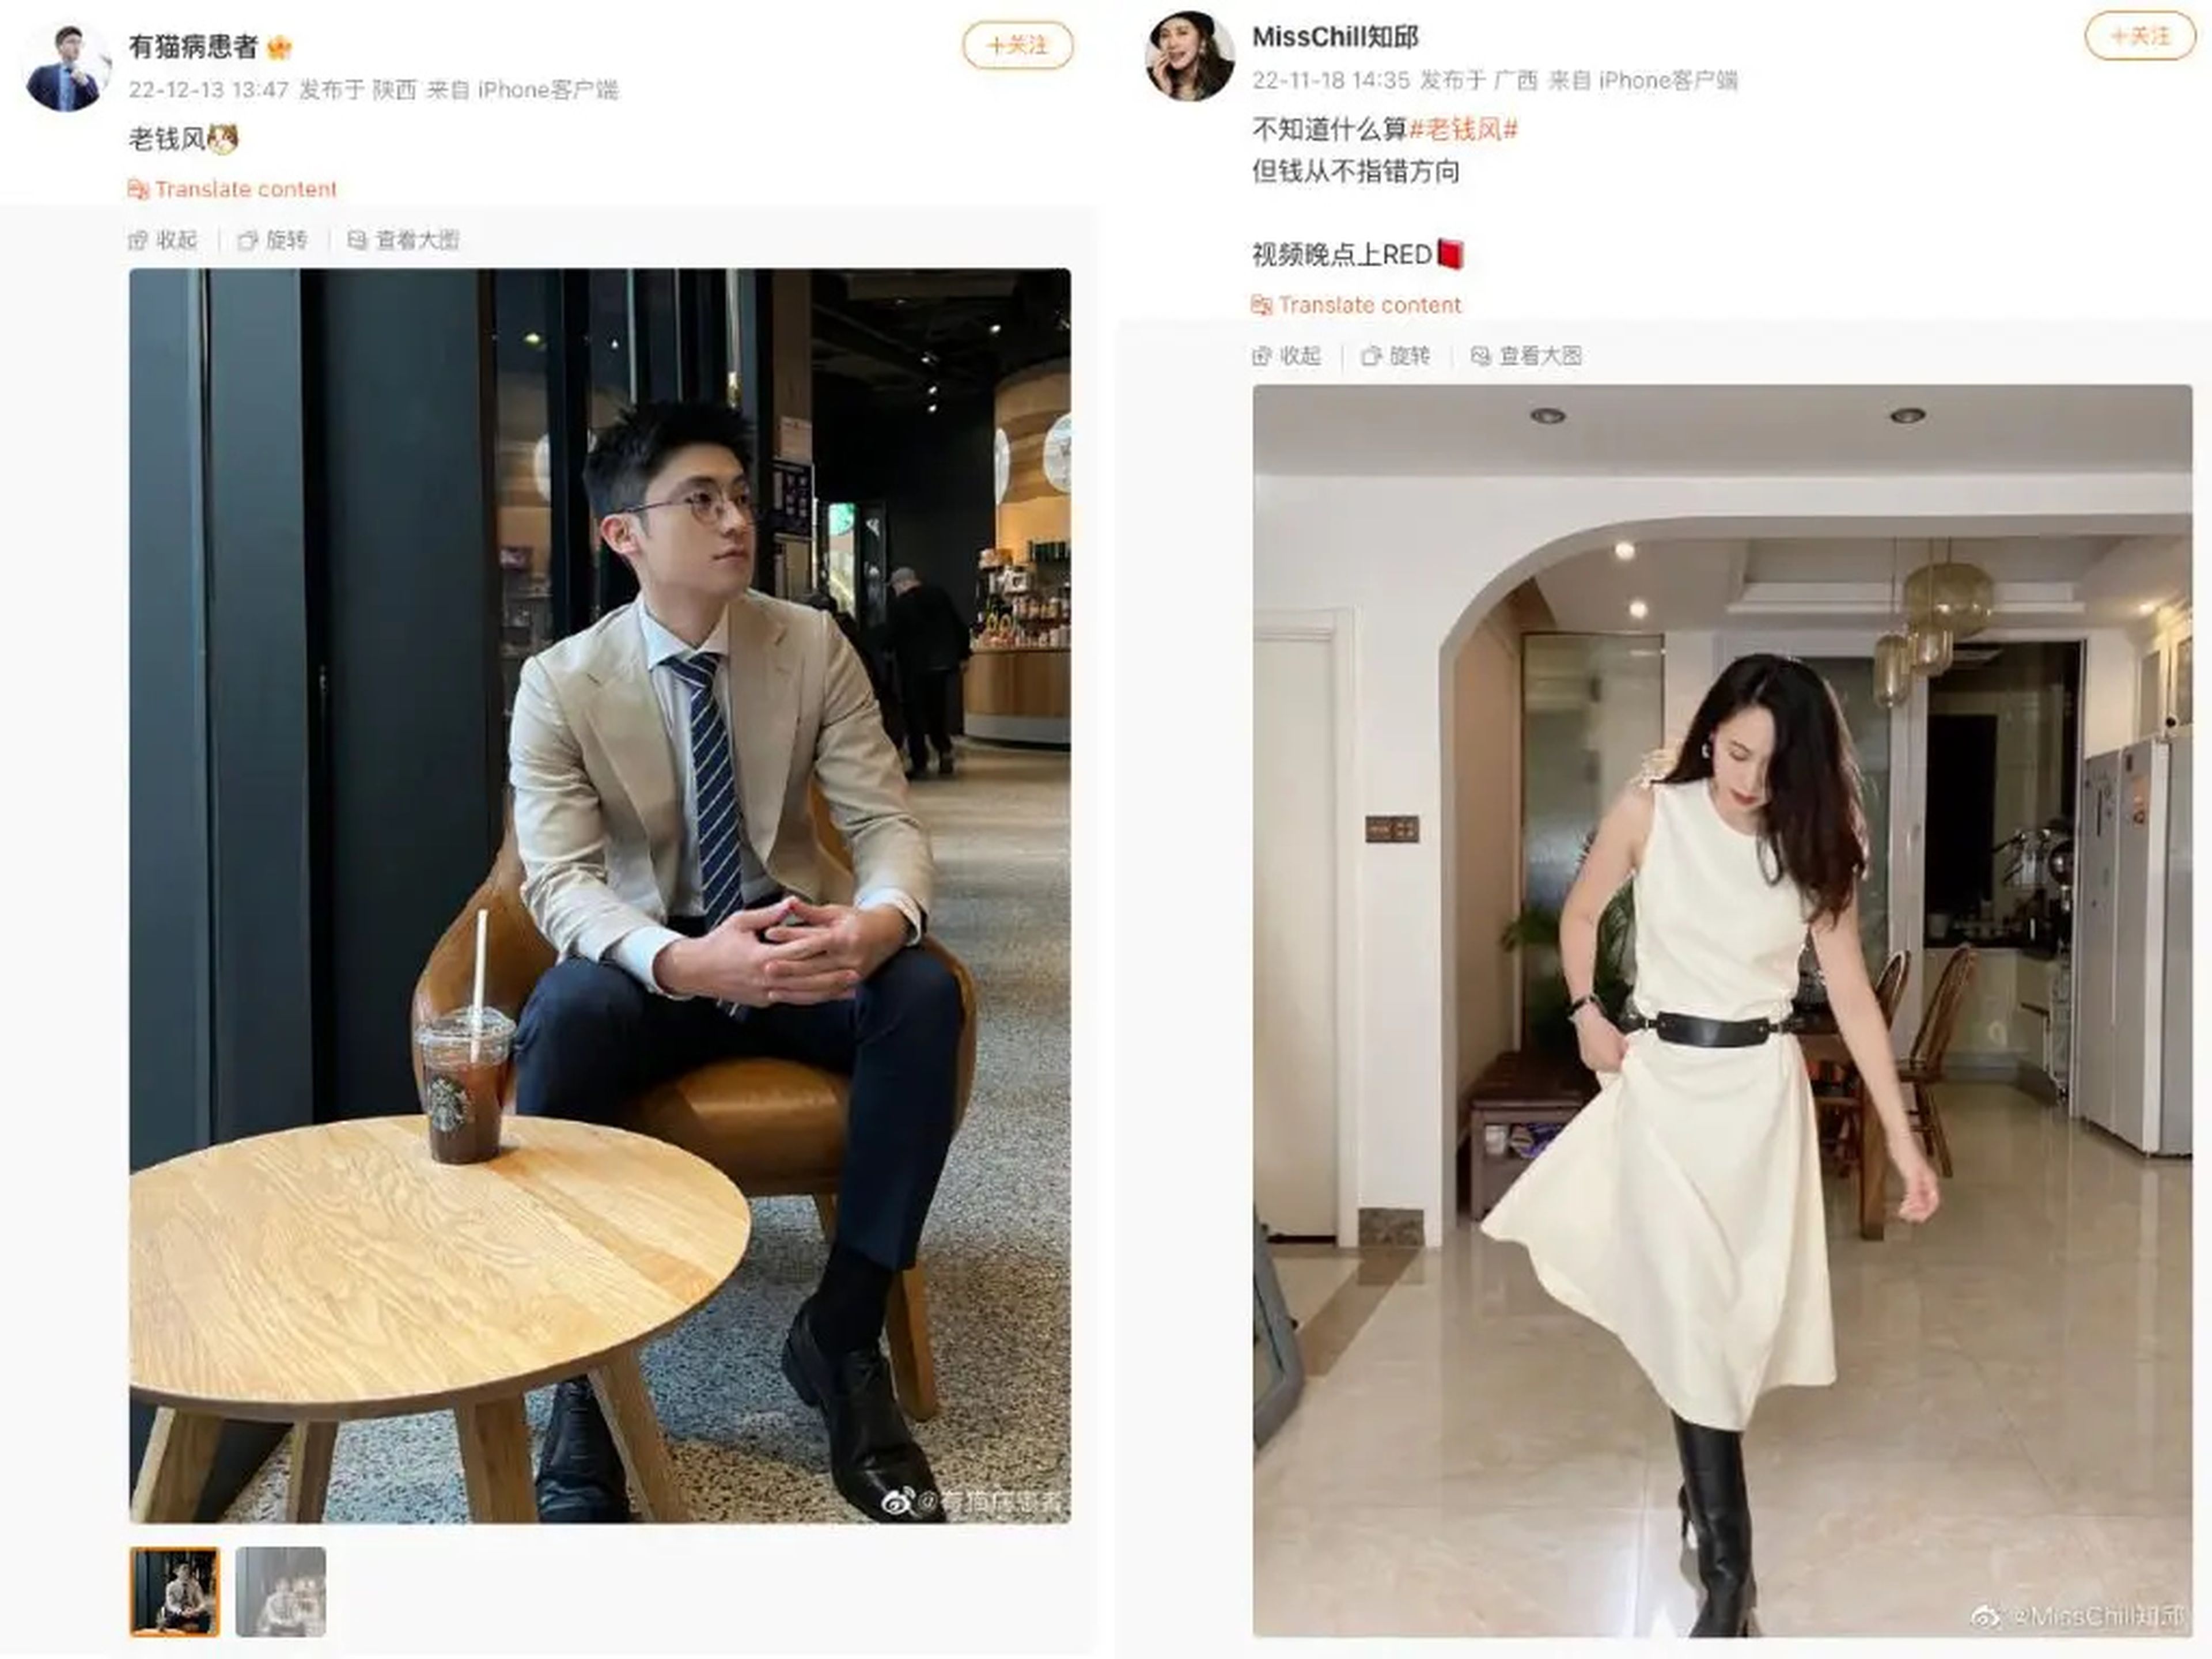 Están por todas partes en Weibo: hombres y mujeres aparentemente adinerados suben fotos suyas con las prendas que creen que mejor representan la estética.